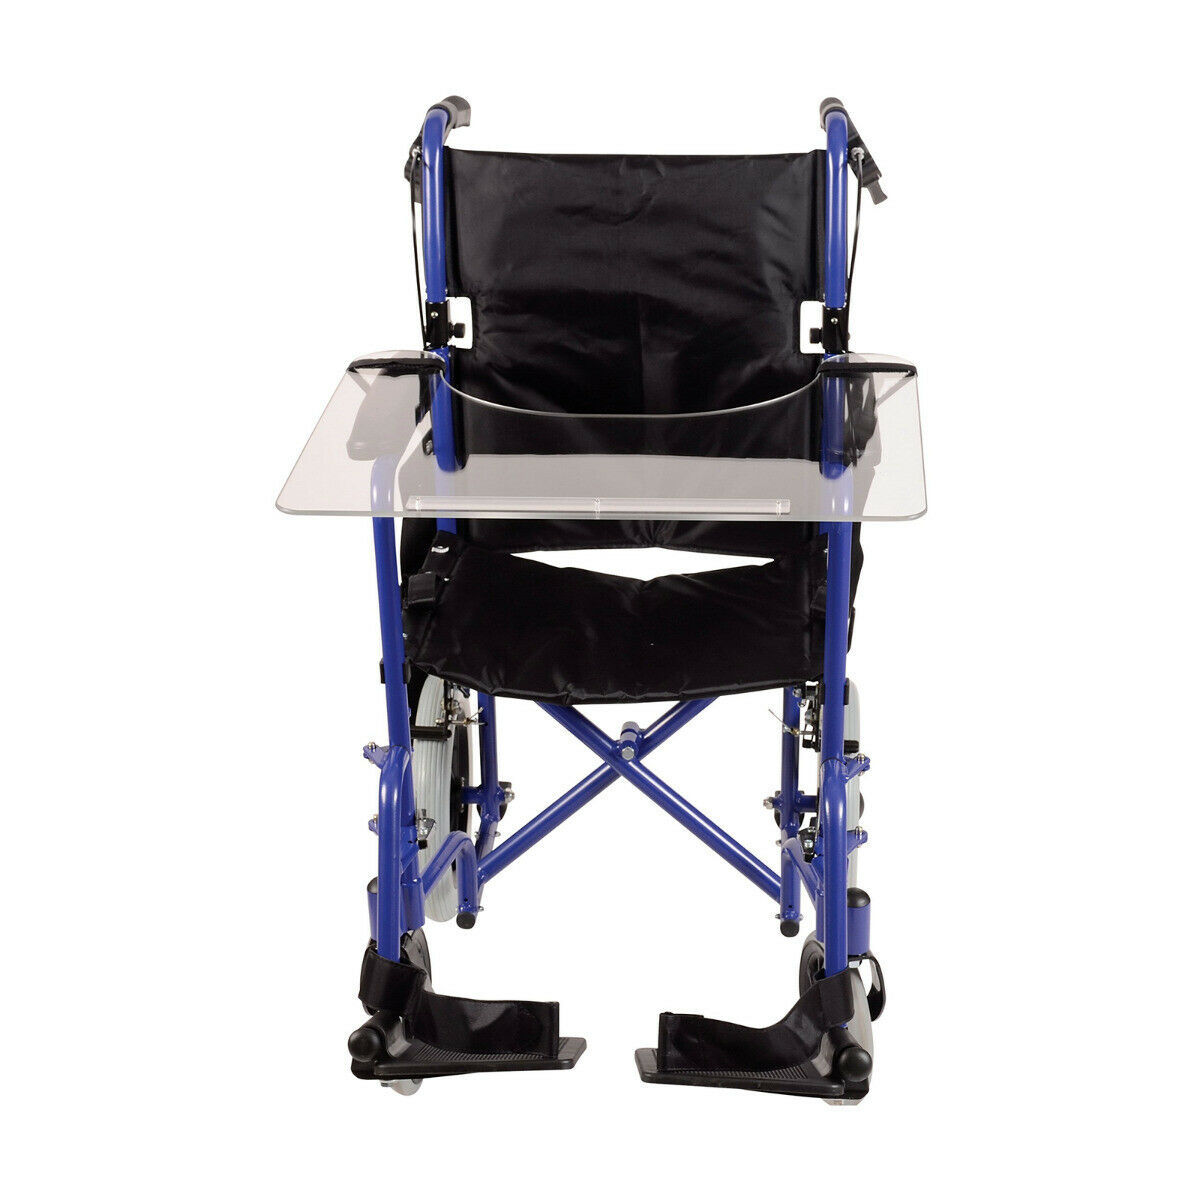 столик для инвалидной коляски и кровати